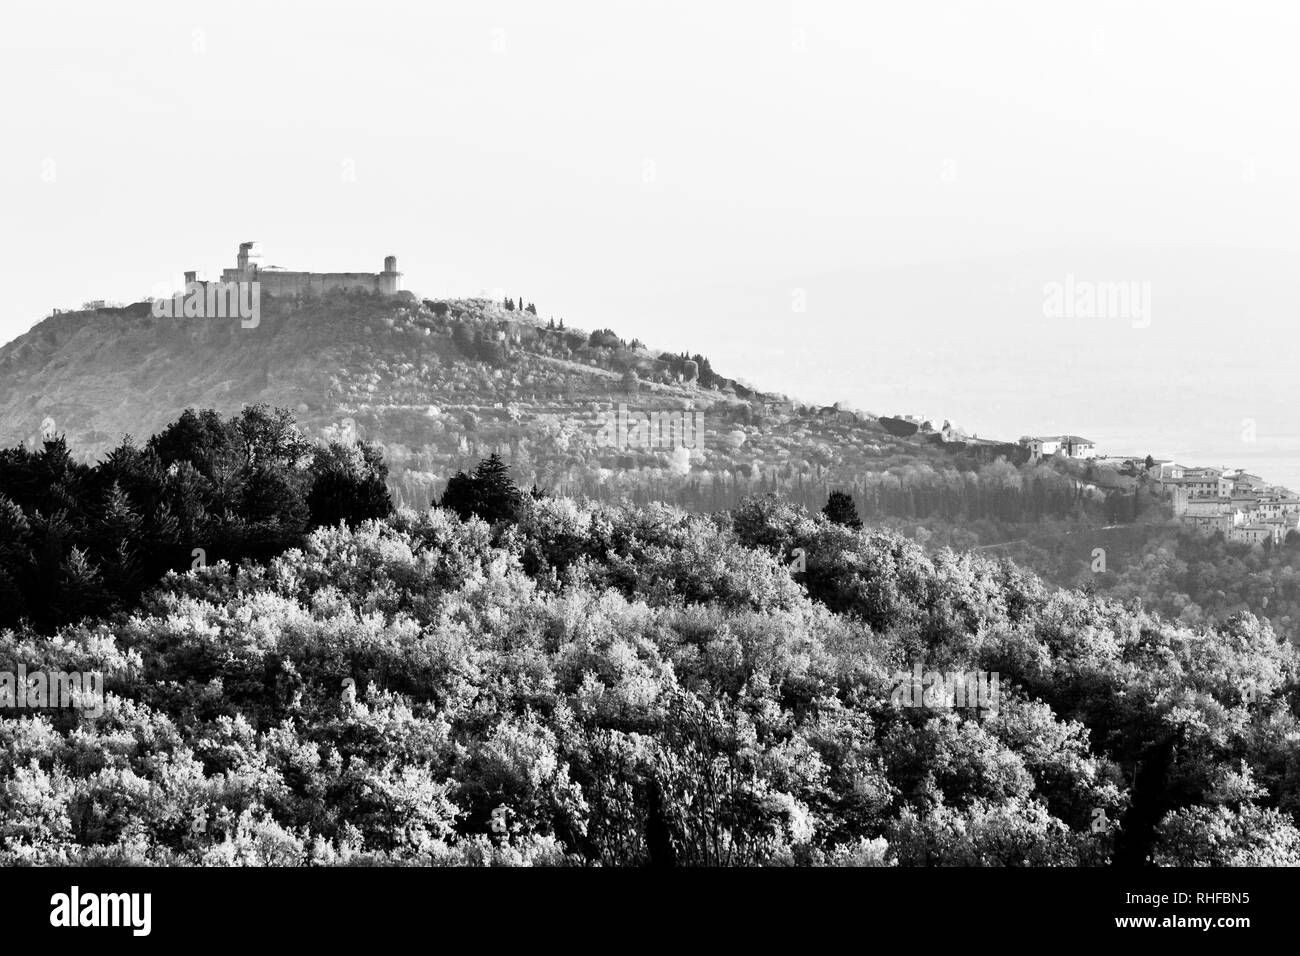 Belle vue sur la ville d'assise (Ombrie) et St.Francis chirch en automne à partir d'un lieu atypique, derrière une colline avec des arbres Banque D'Images